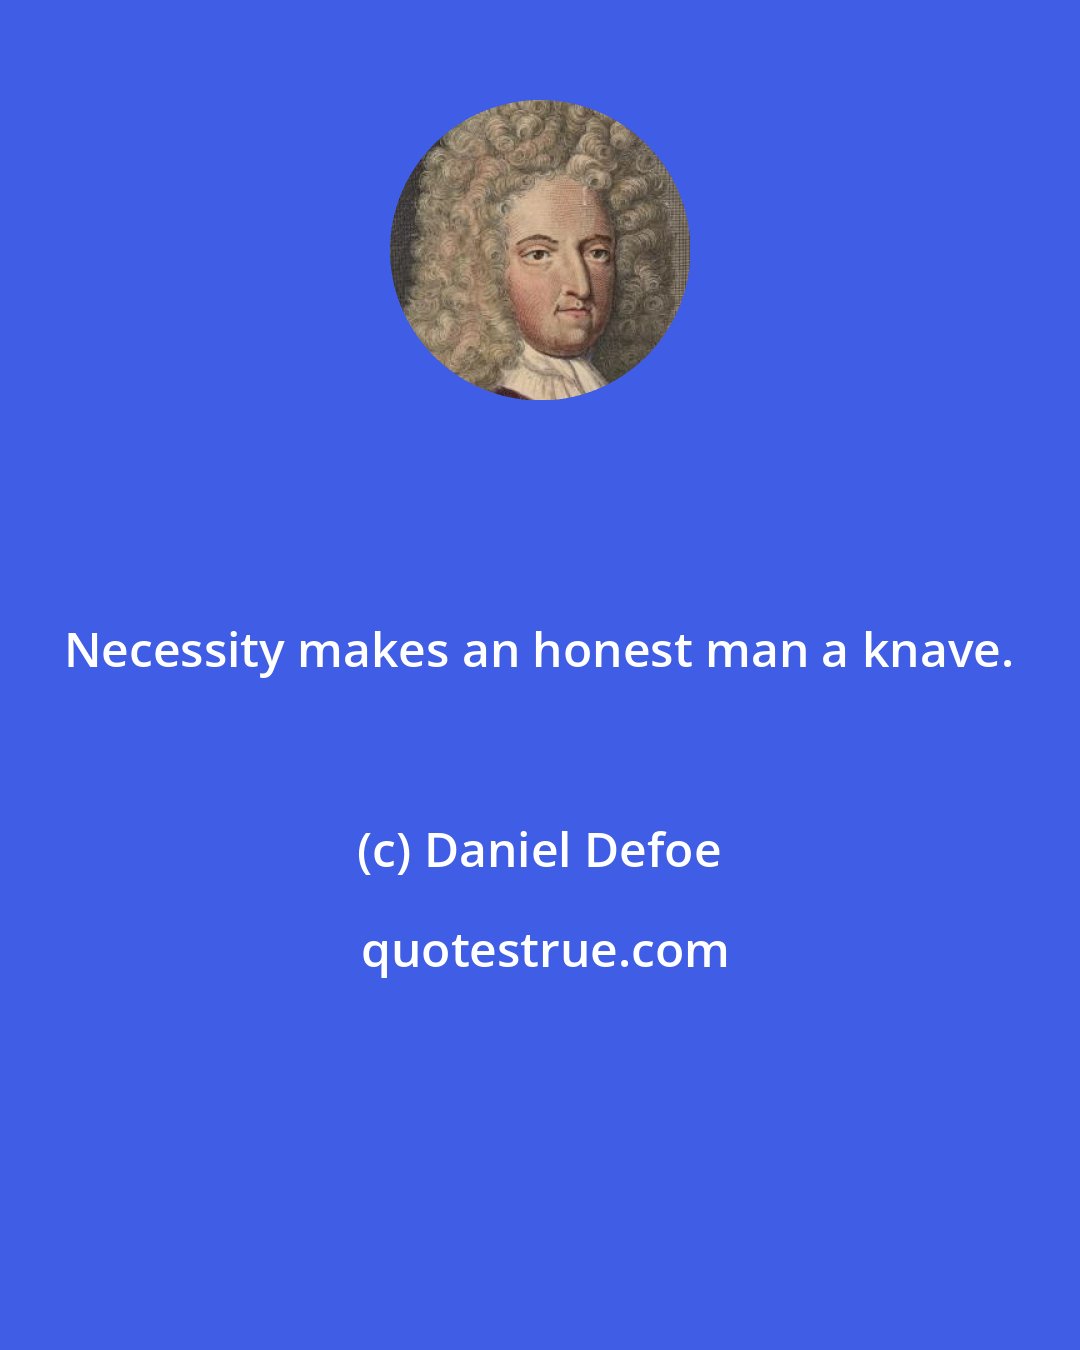 Daniel Defoe: Necessity makes an honest man a knave.